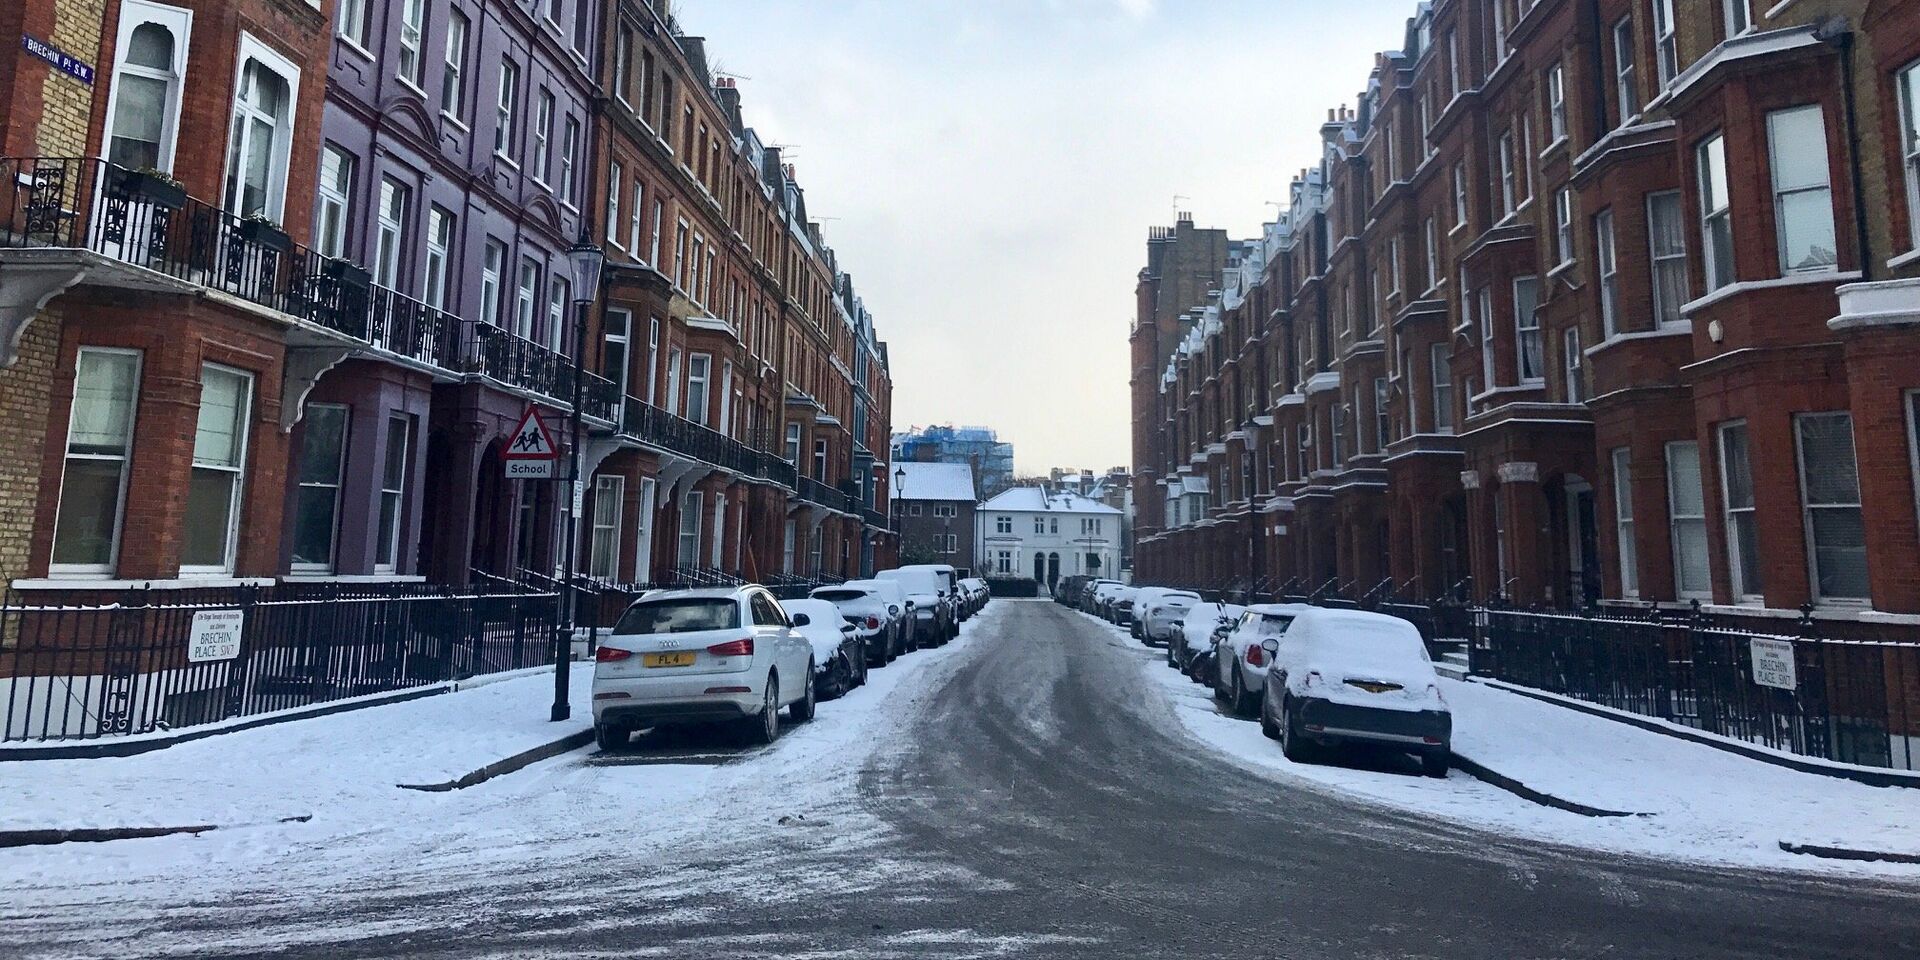 Снег, выпавший на улицах Лондона. 28 февраля 2018 - ИноСМИ, 1920, 16.09.2021